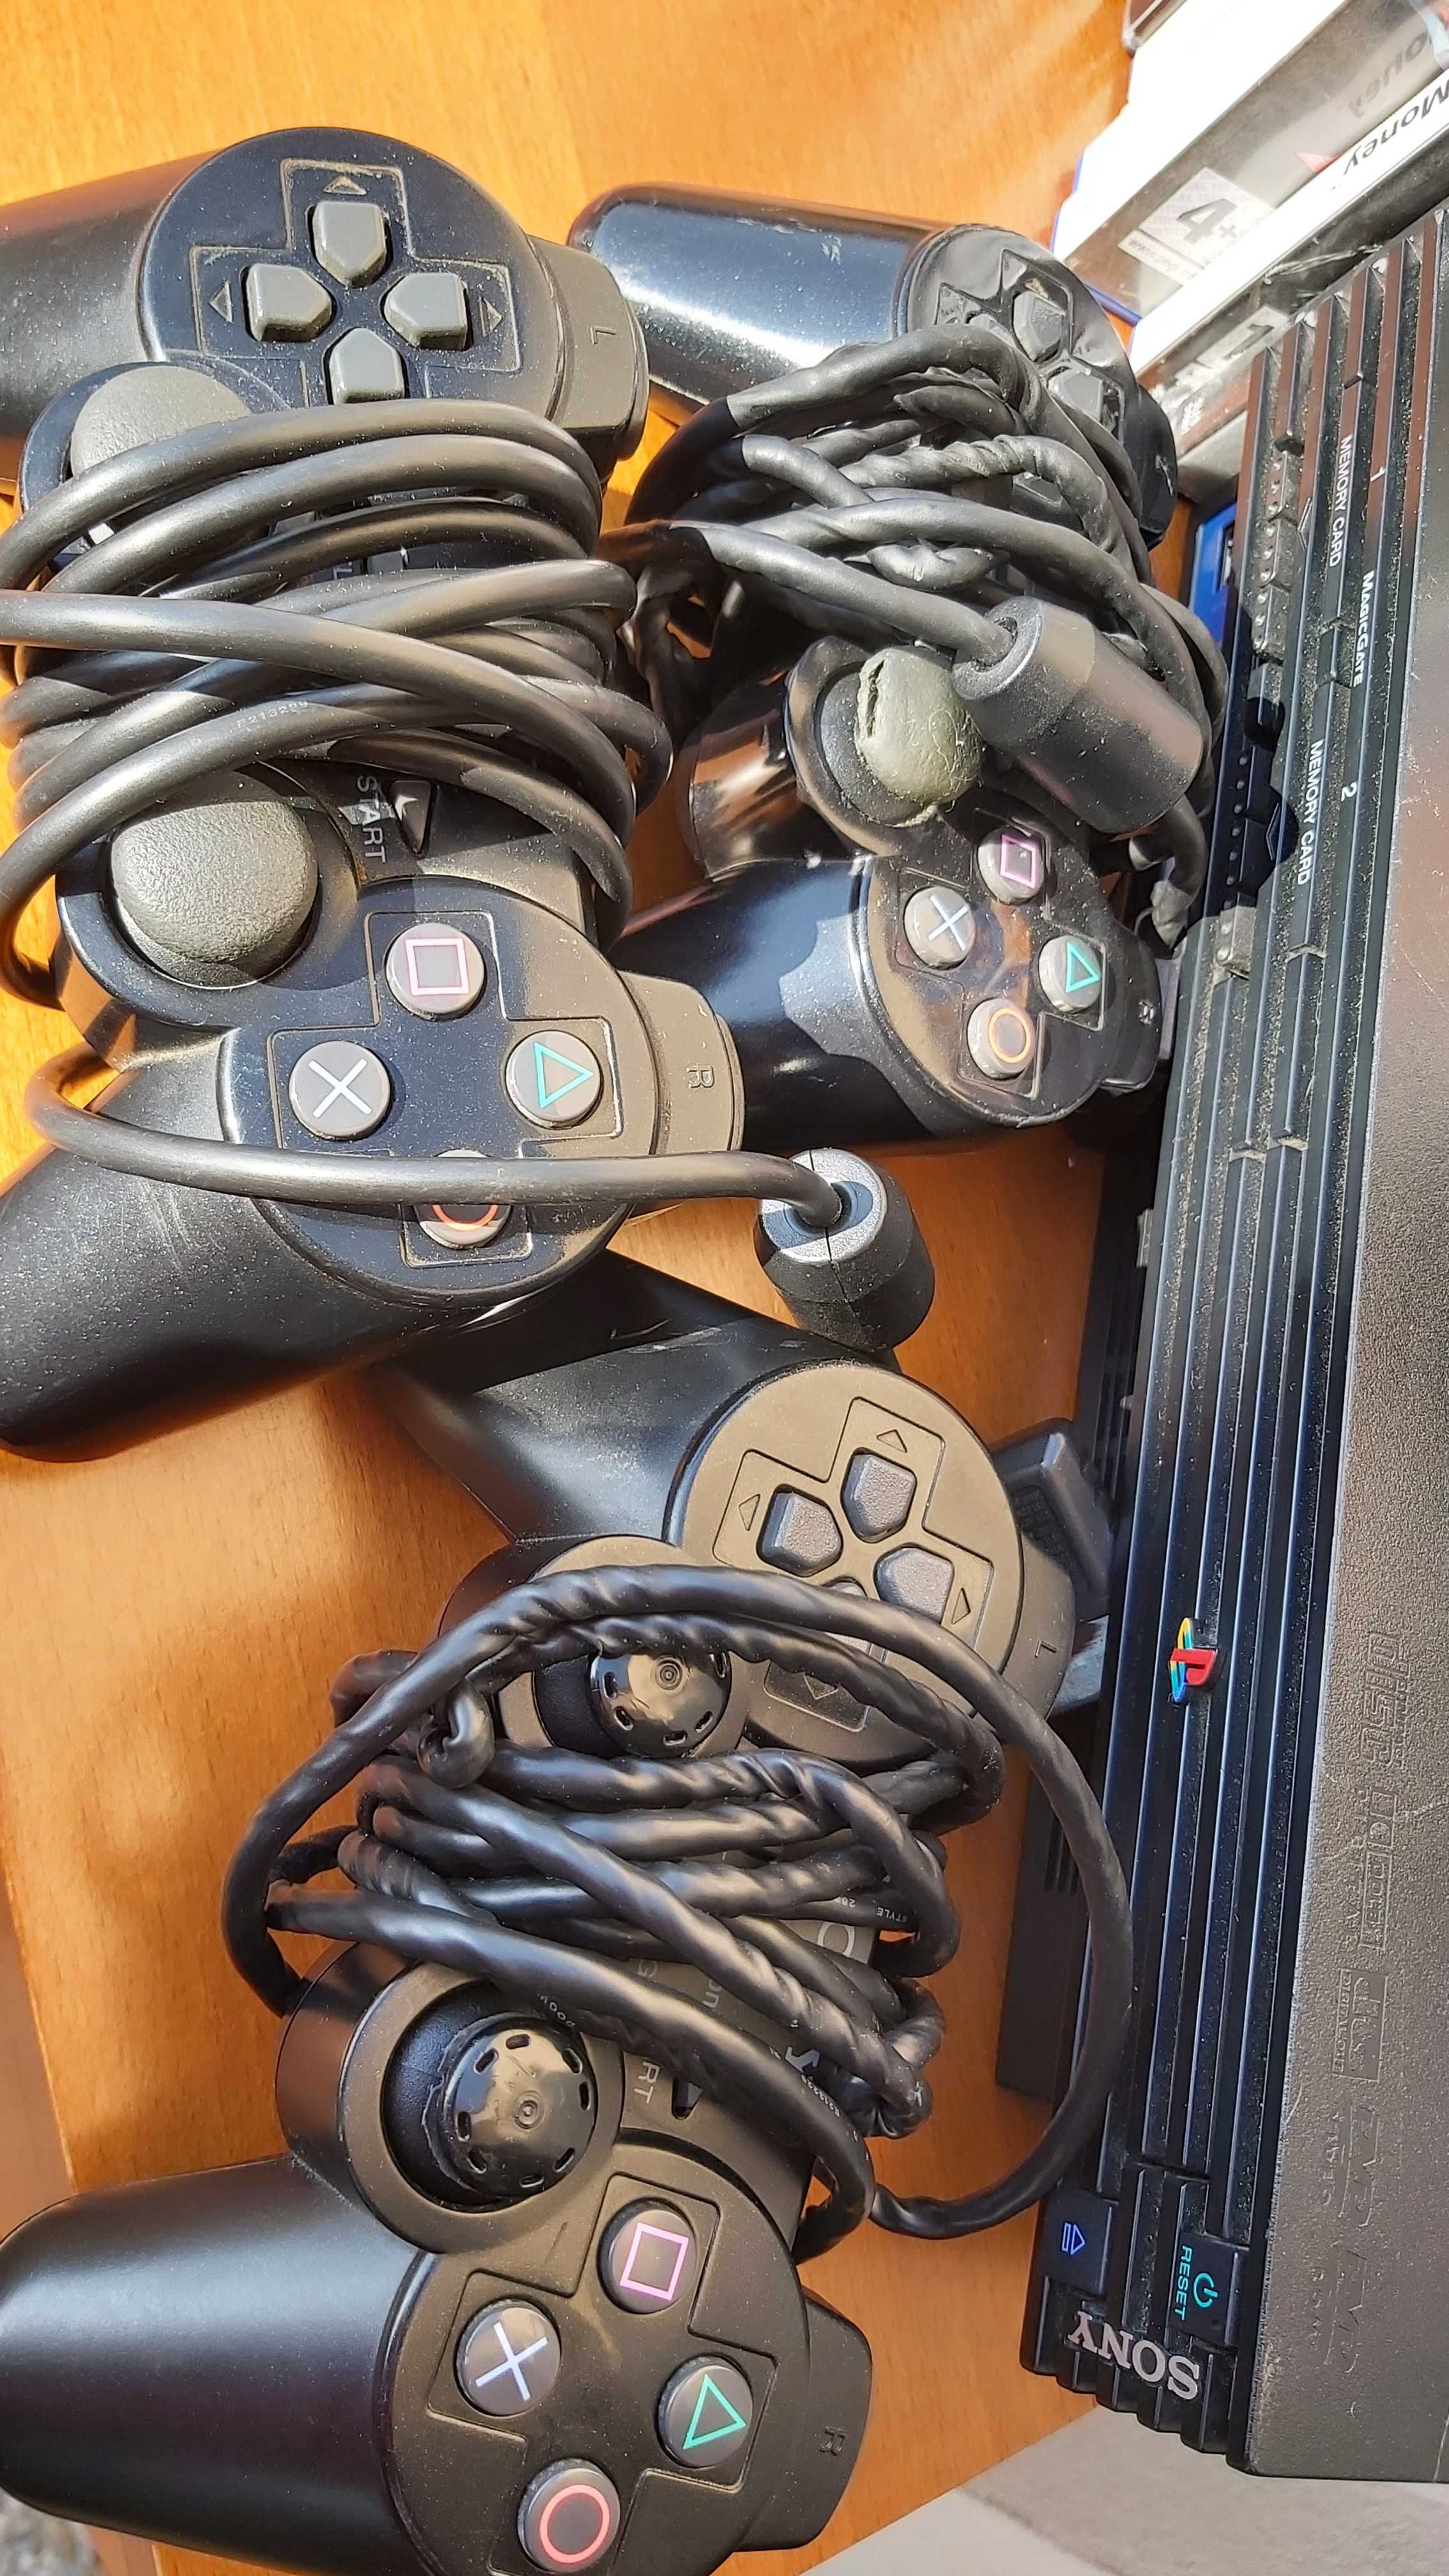 PlayStation 2 com 3 comandos e 14 jogos